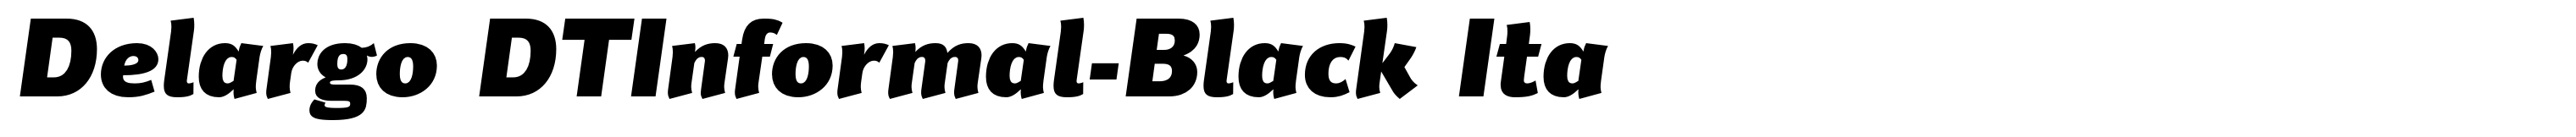 Delargo DTInformal-Black Ita